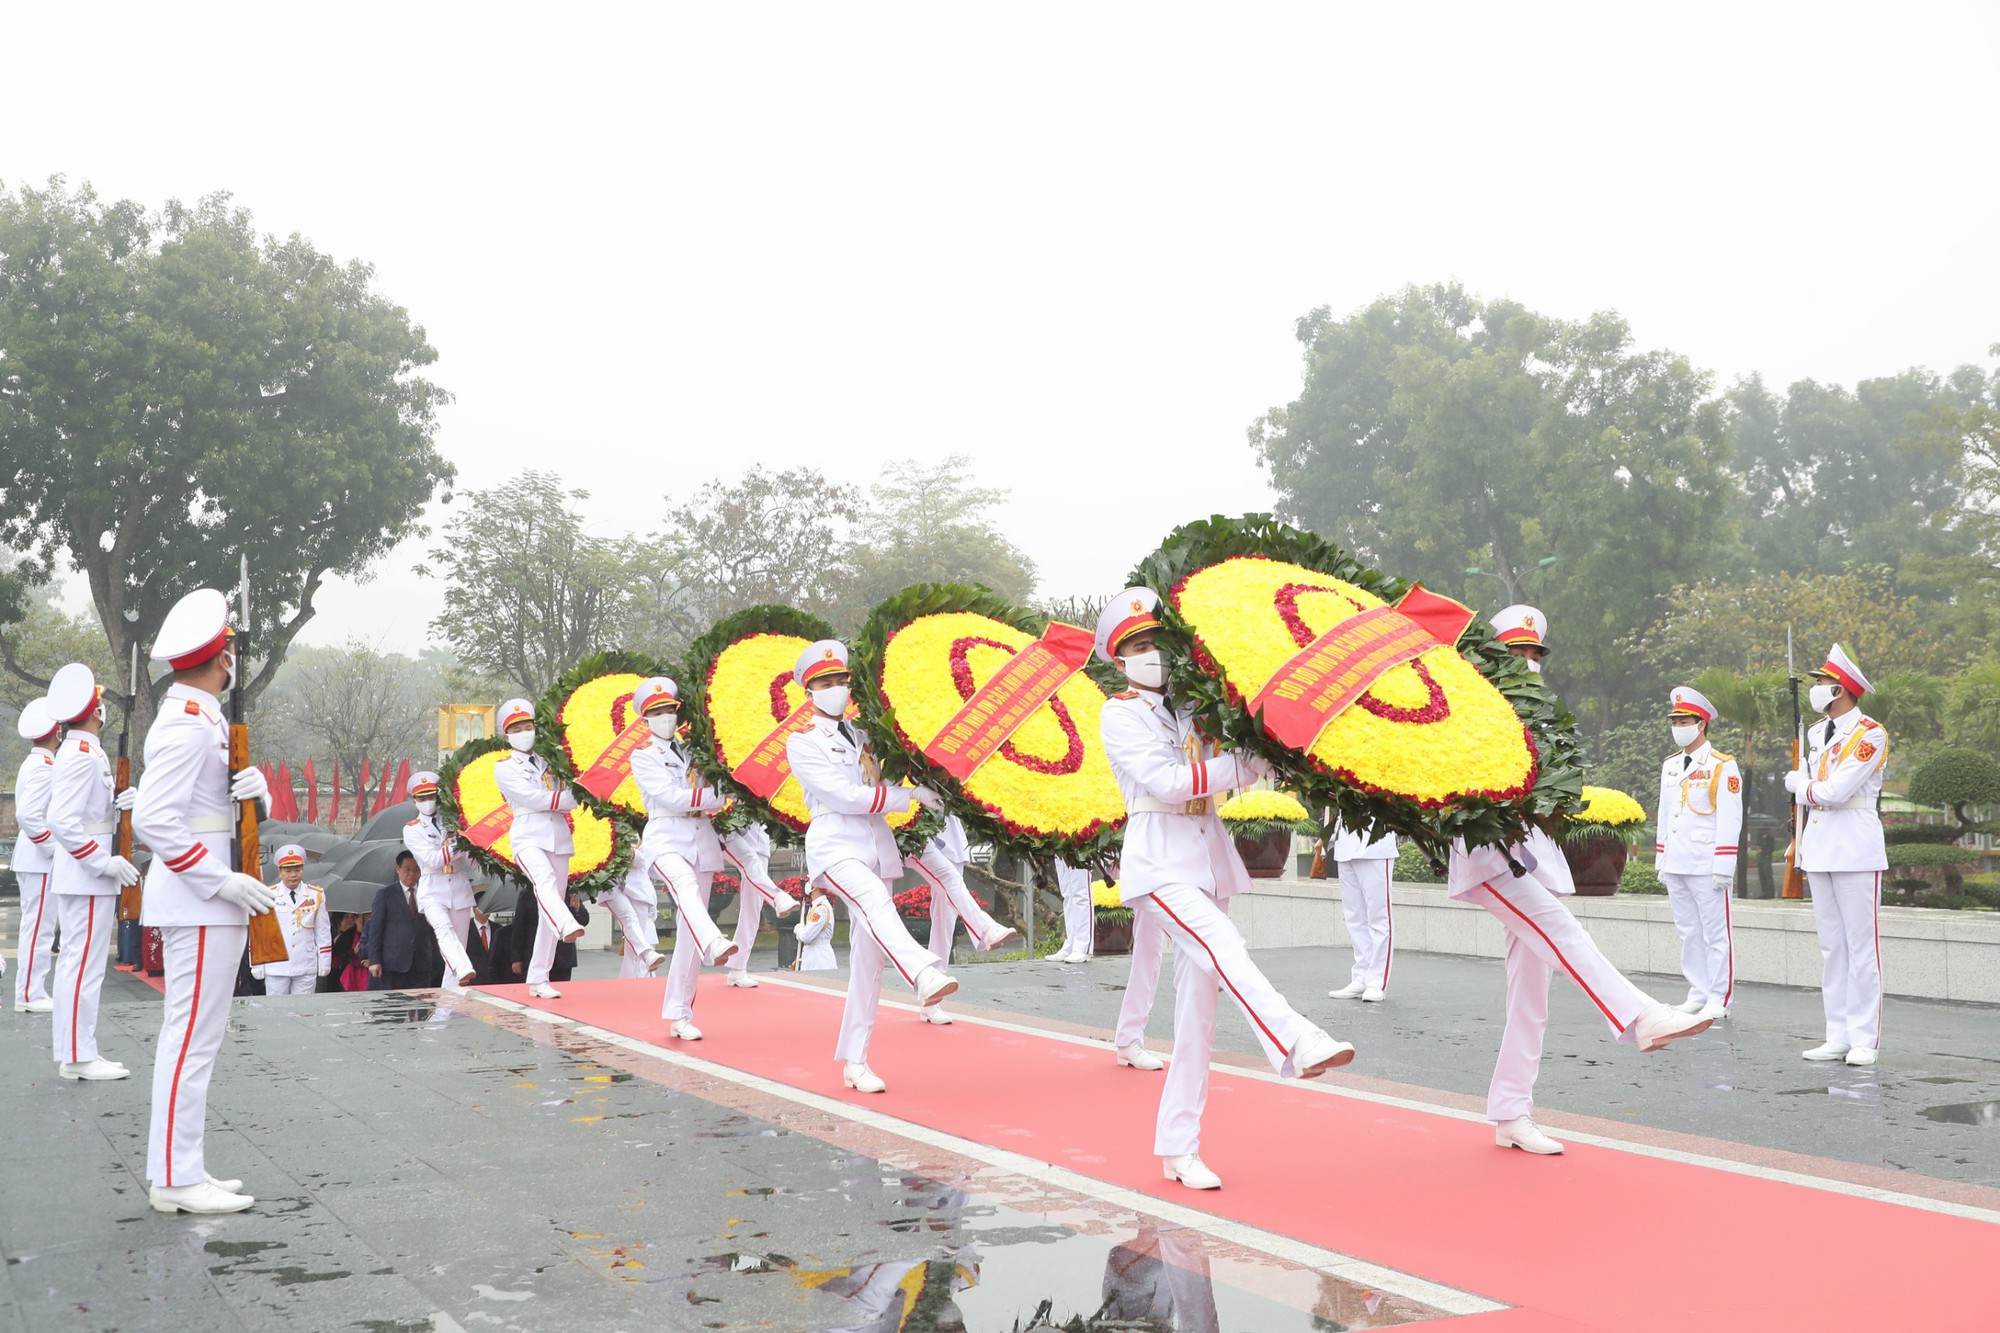 Lãnh đạo Đảng, Nhà nước vào Lăng viếng Chủ tịch Hồ Chí Minh, tưởng niệm các Anh hùng liệt sĩ - Ảnh 2.